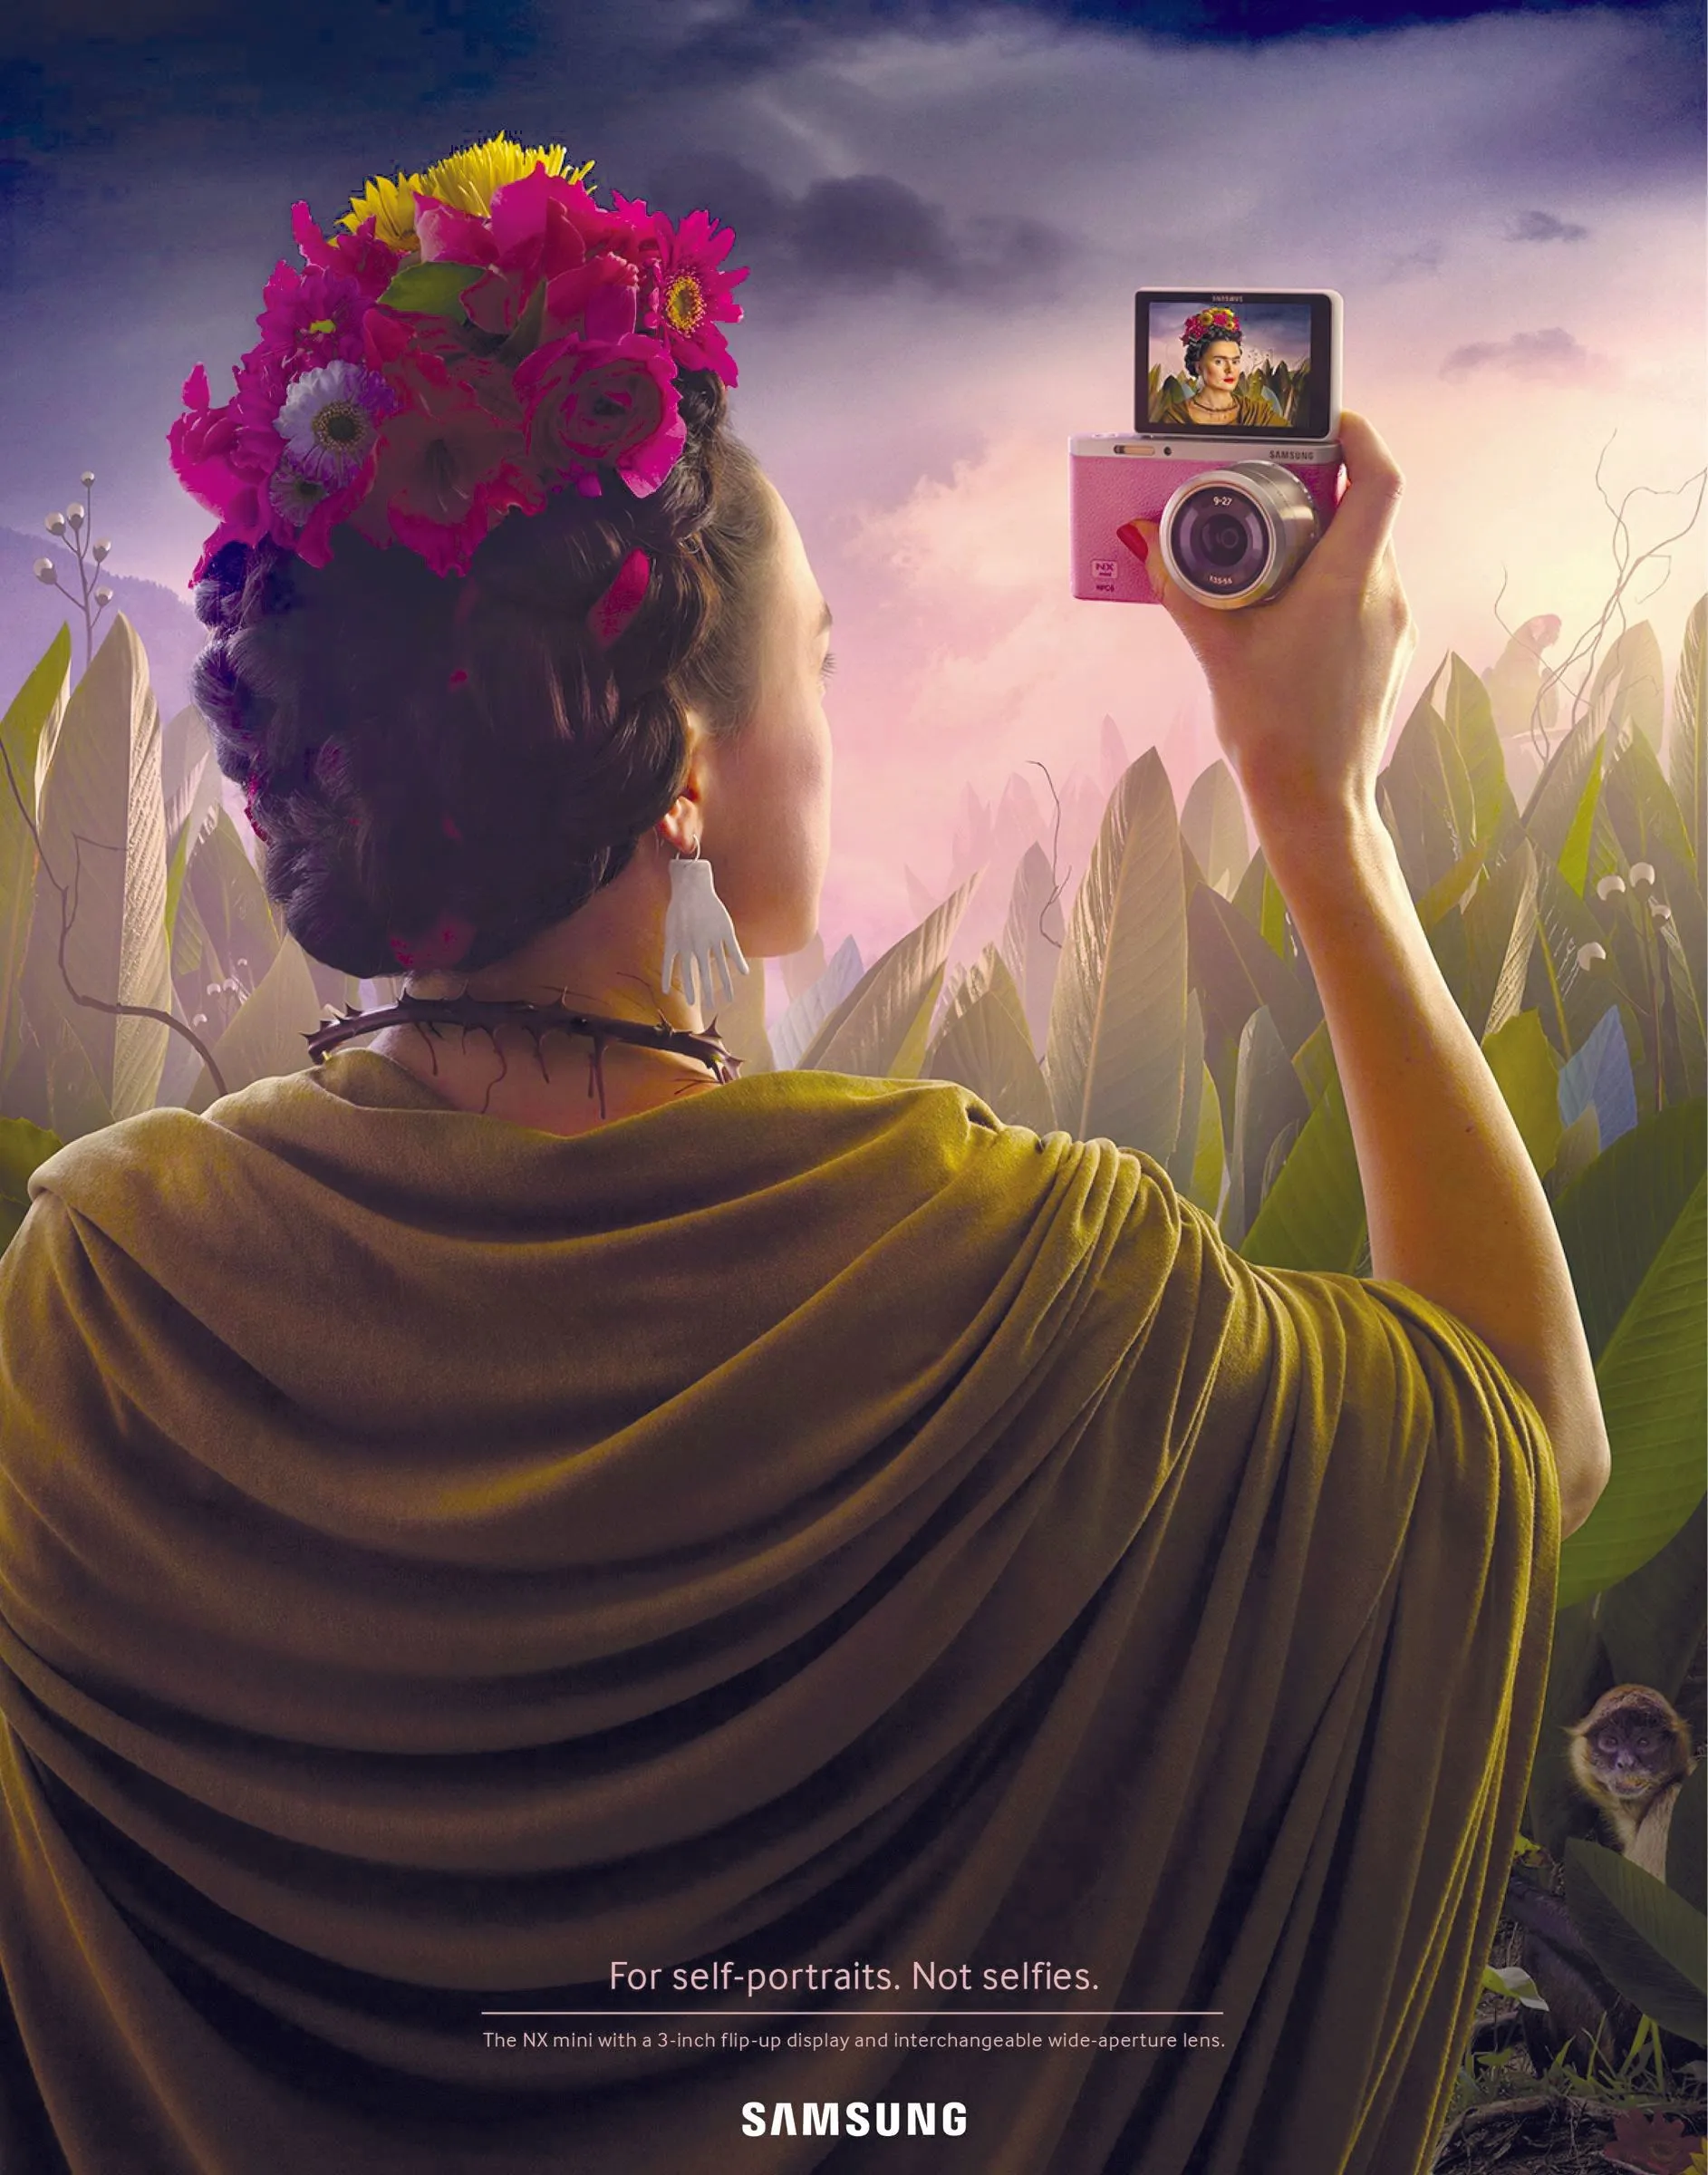 Para los autorretratos. No selfies. Samsung recrea el autorretrato de Frida Kahlo en forma de selfie, 2014.